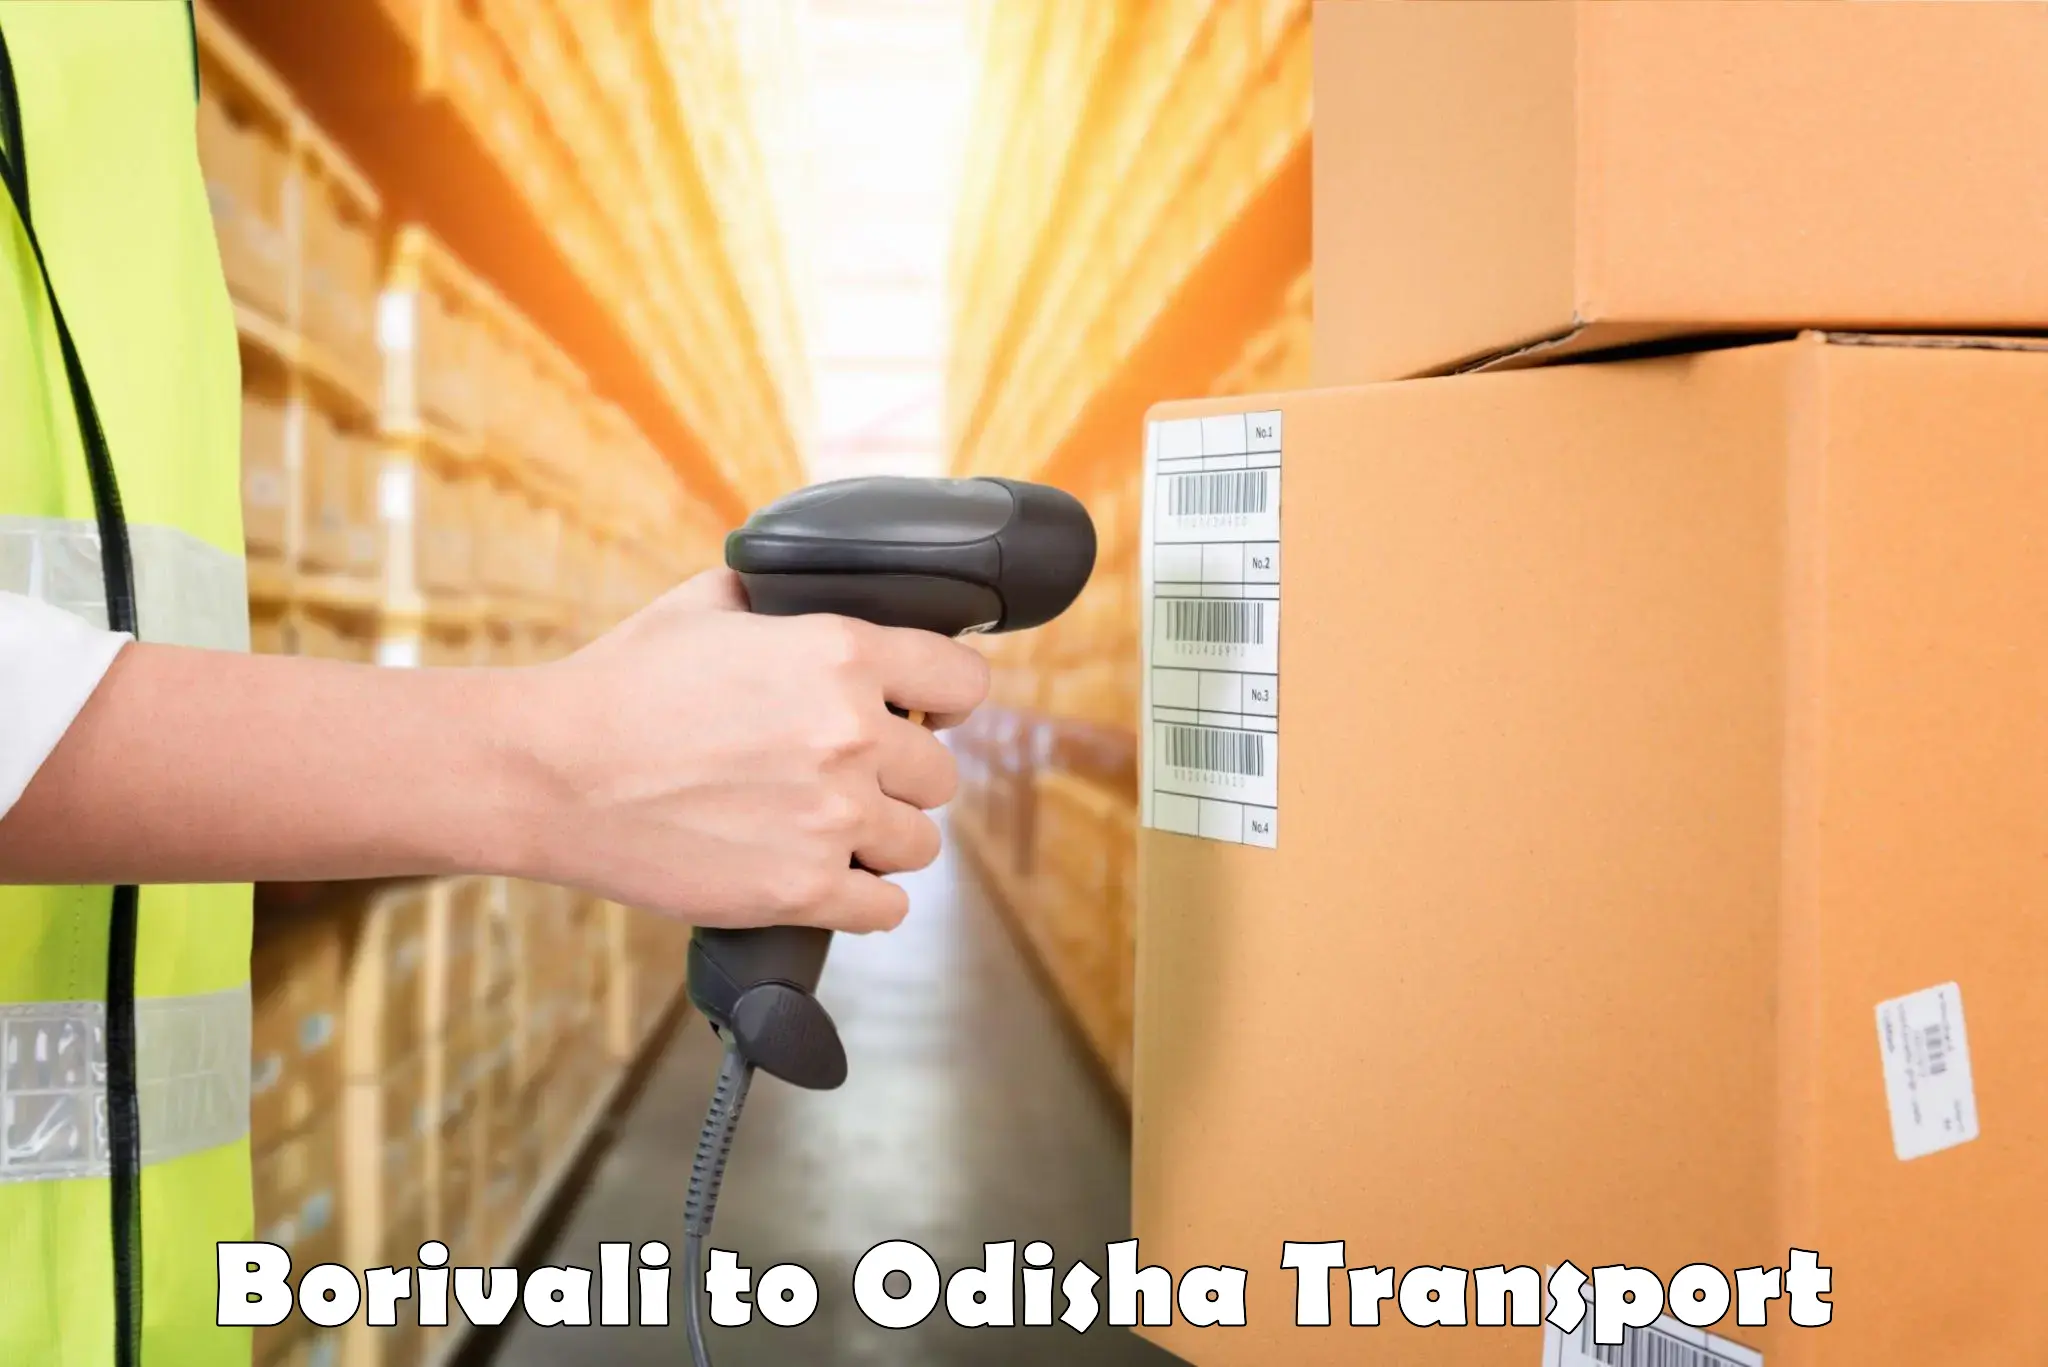 All India transport service Borivali to Boudh